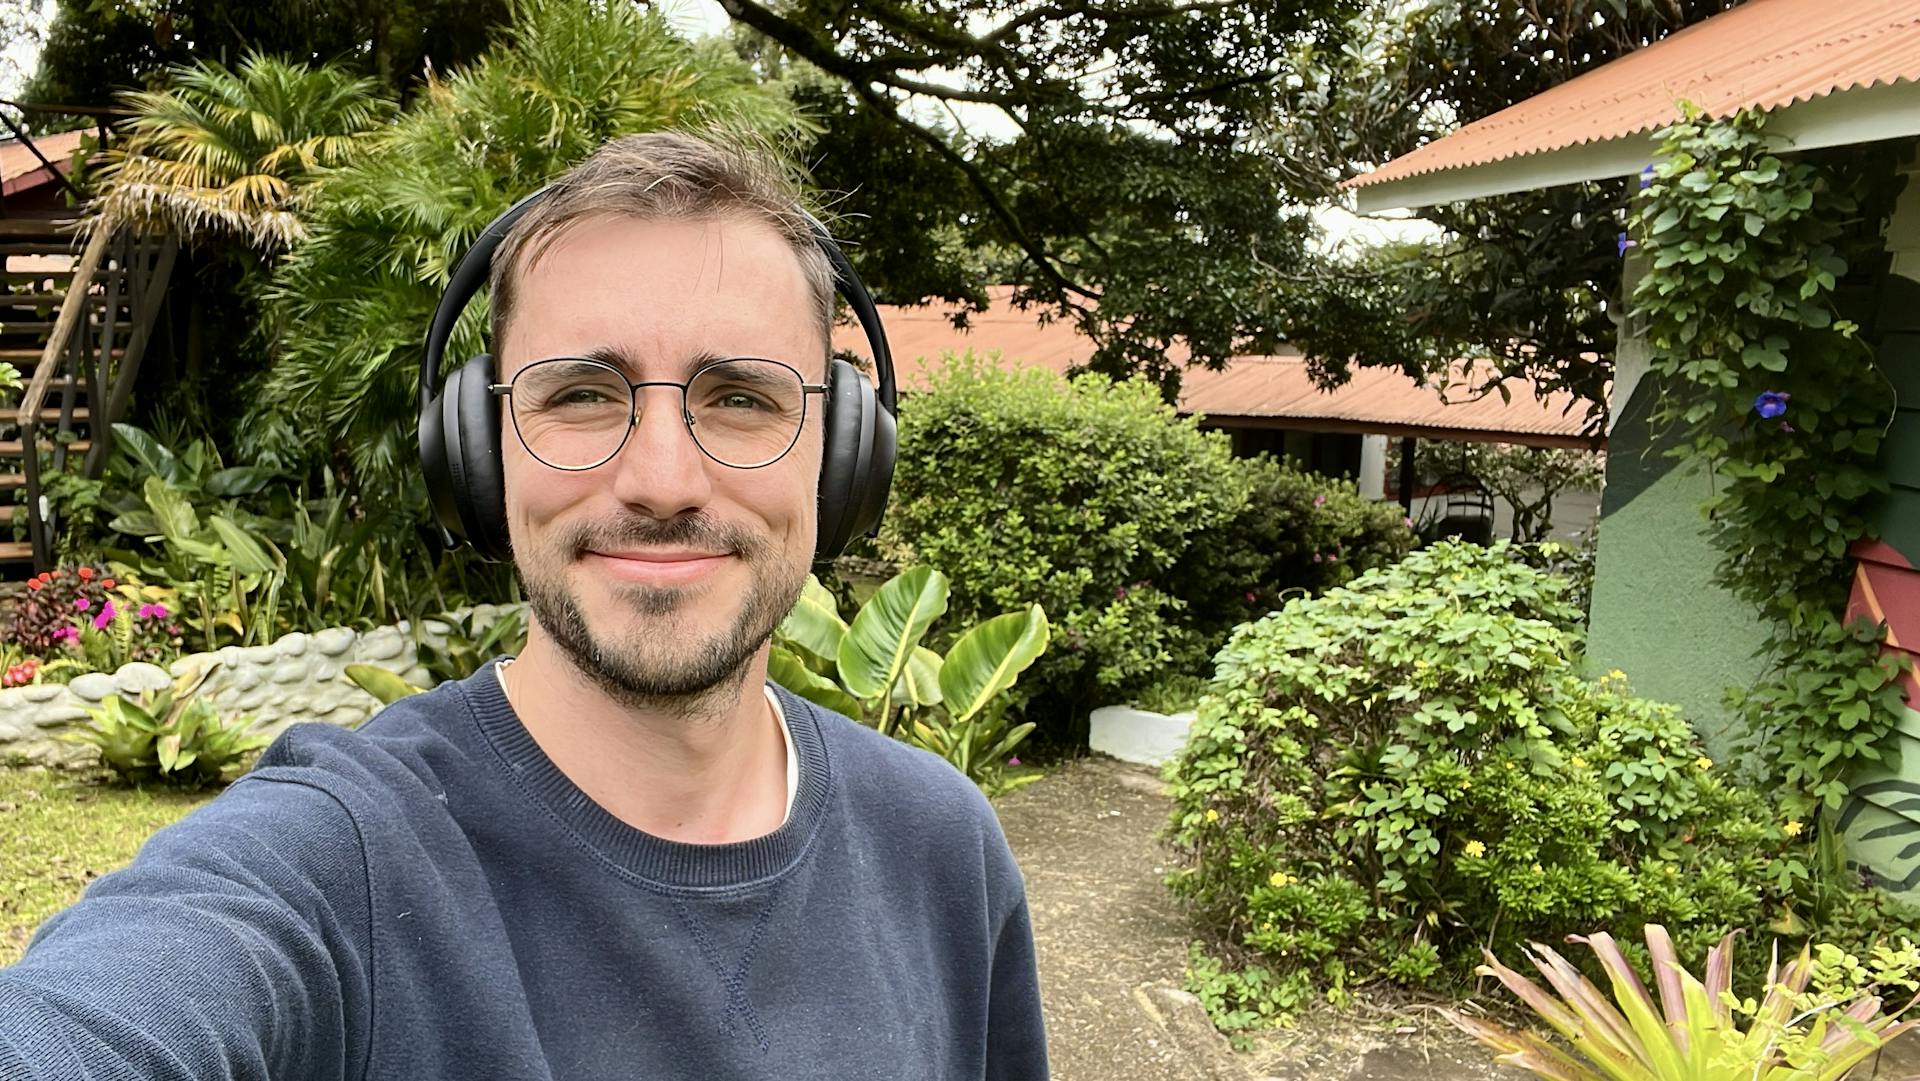 Taking selfies at Selina Monteverde instead of getting things done